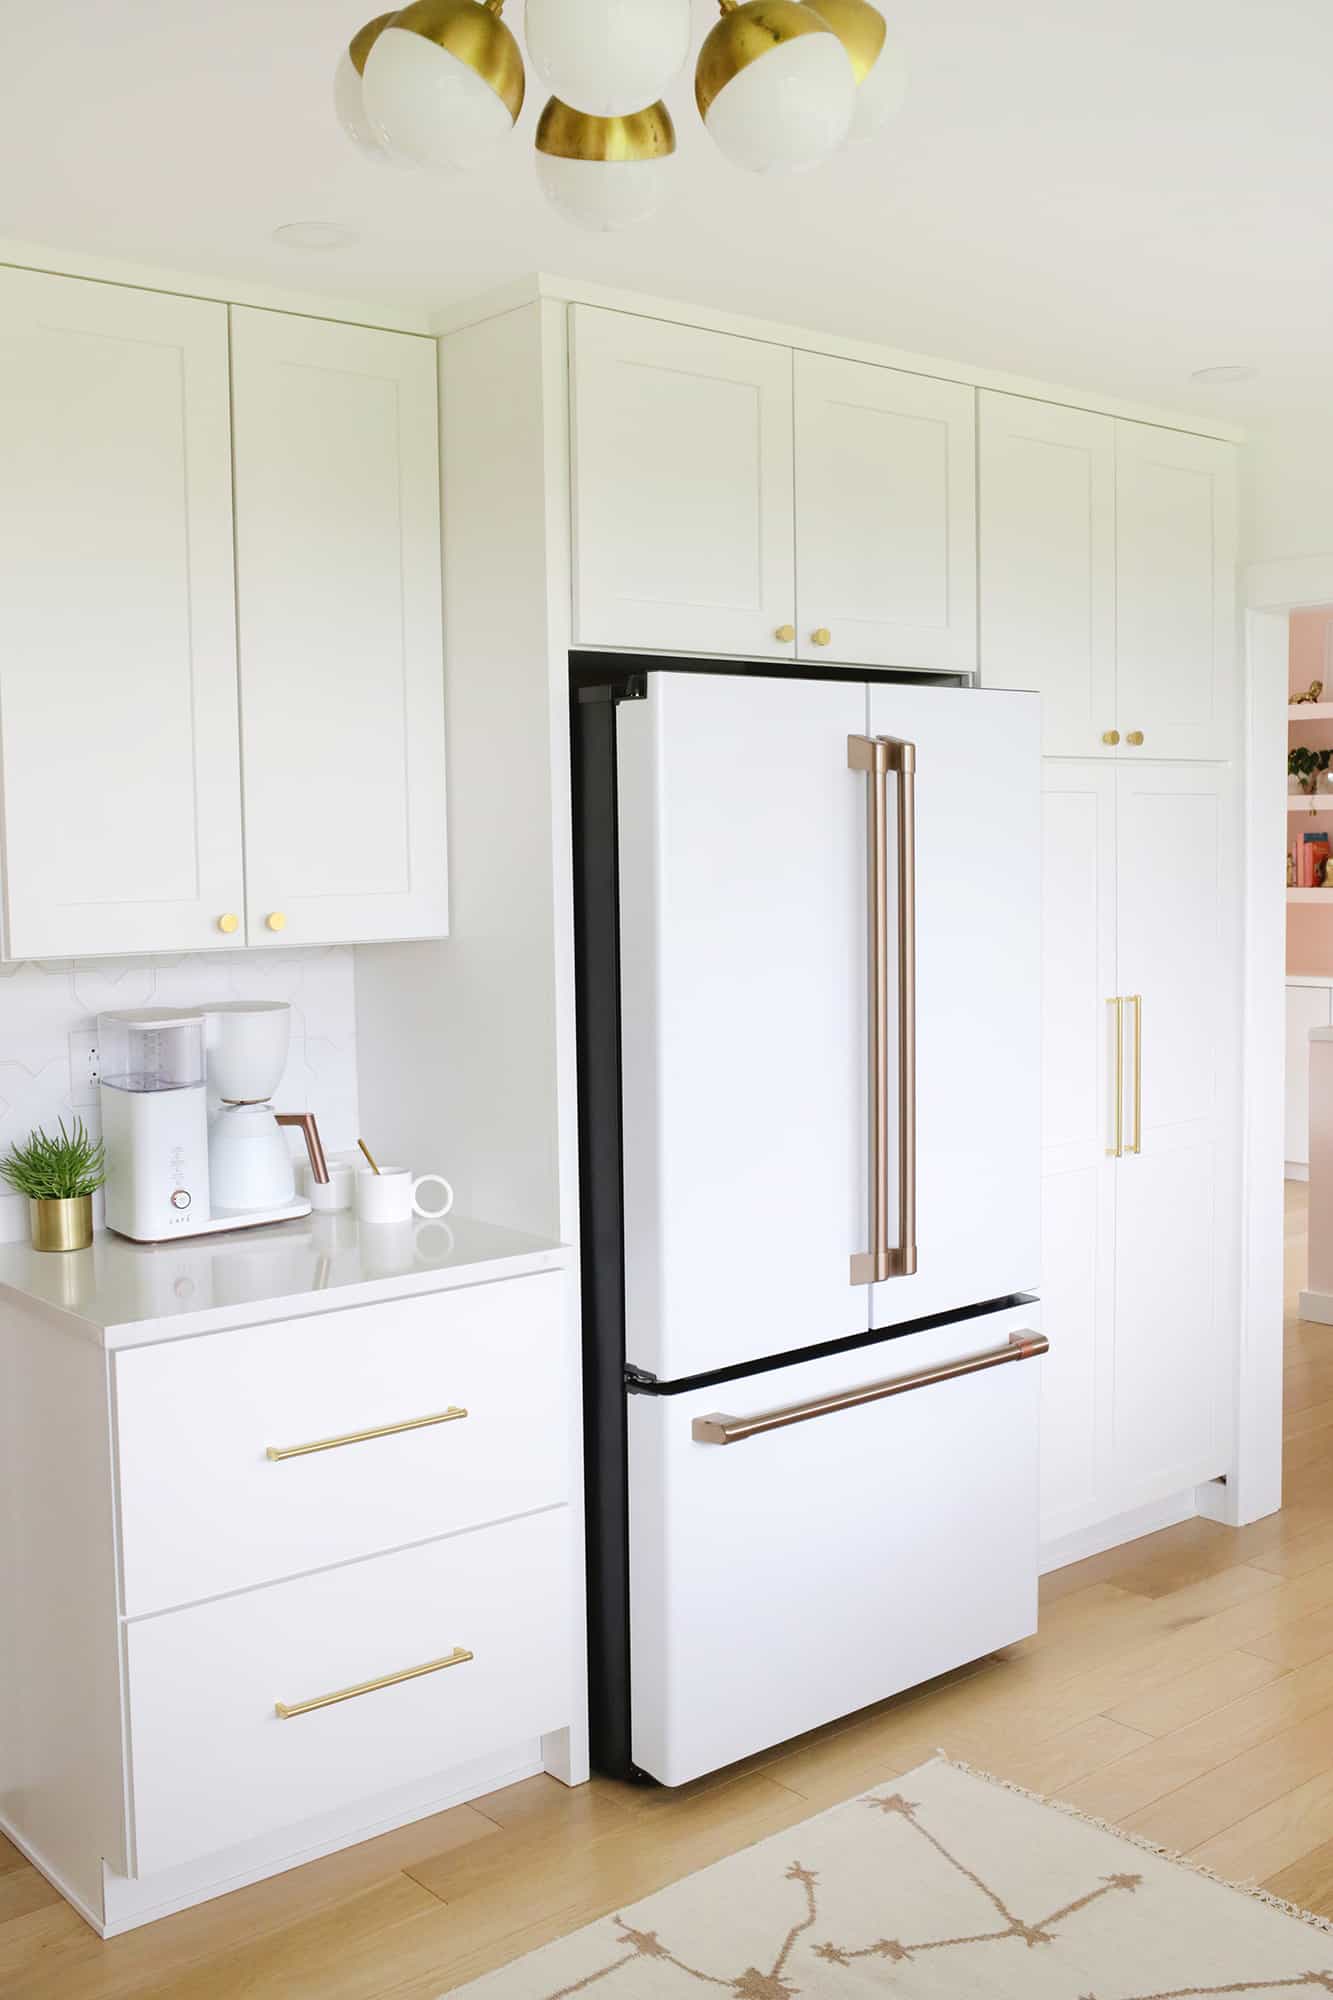 vue du réfrigérateur avec cafetière sur le comptoir